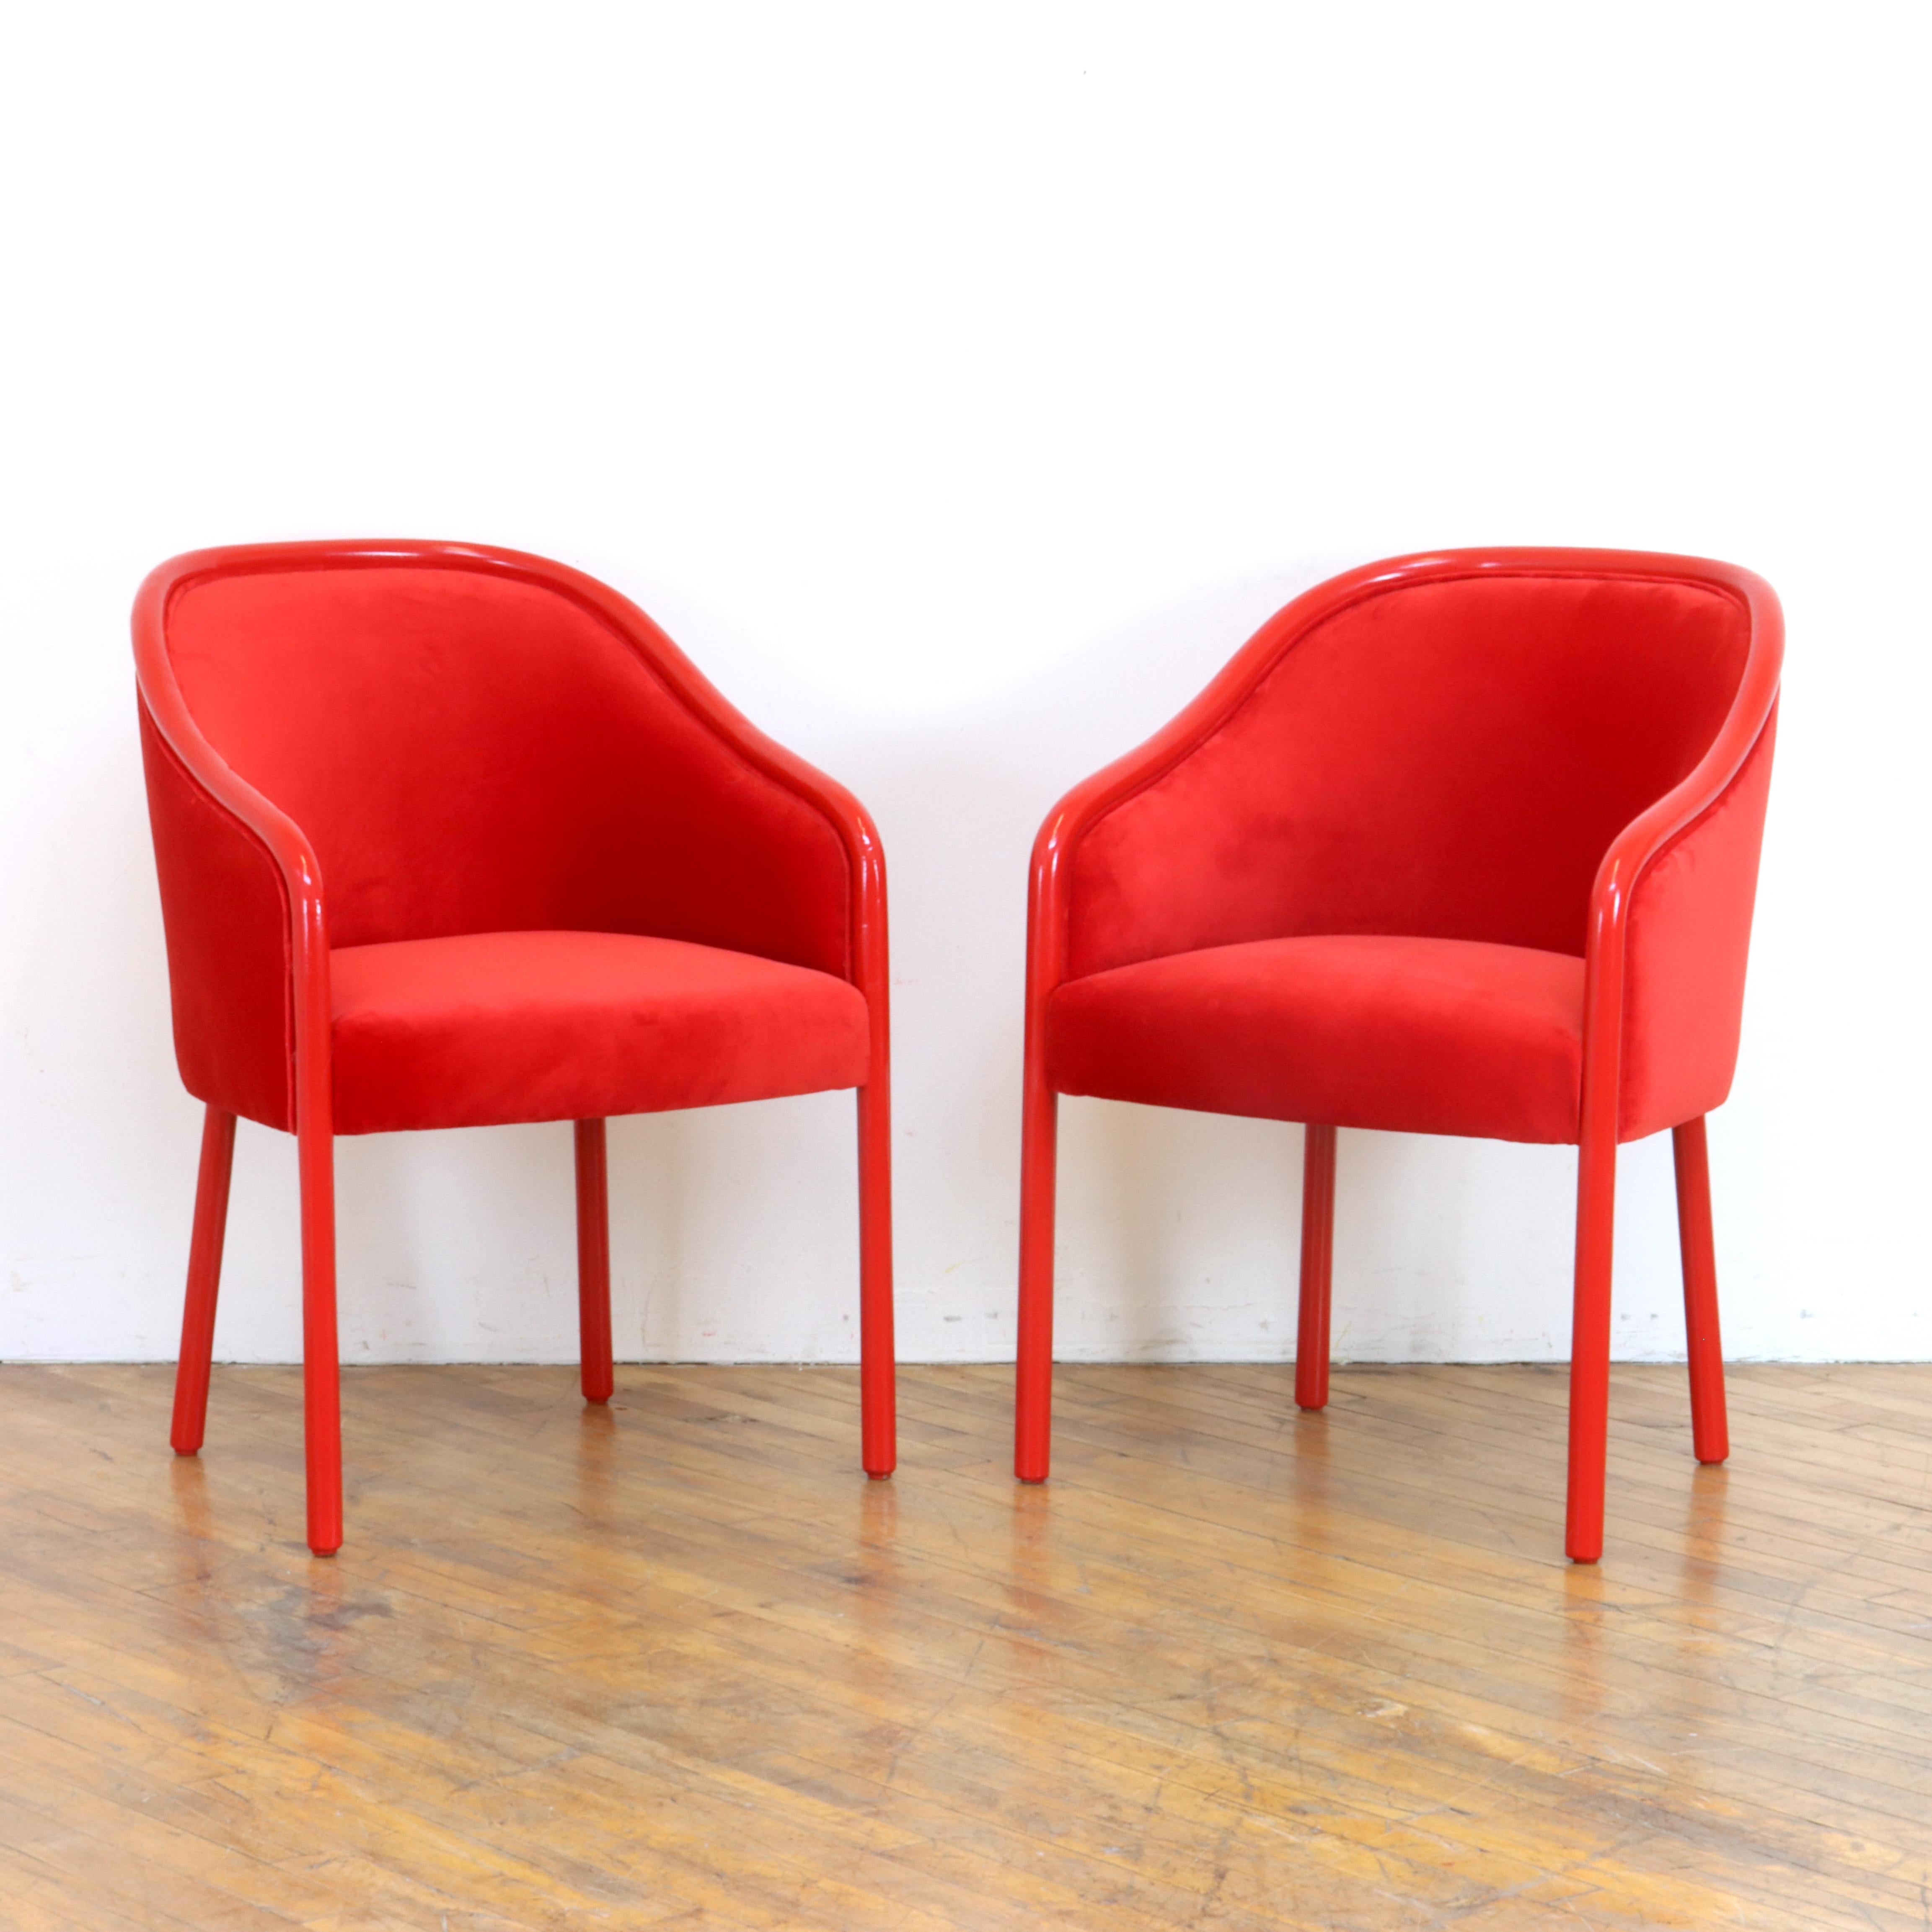 Erfüllen Sie sich Ihre monochromen Träume mit diesem hübschen Paar maßgeschneiderter Vintage-Stühle von Ward Bennett Barrel für Brickel Associates. Die Eschenholzrahmen wurden mit Emaille gestrichen und mit rotem Samt neu bezogen.  

Ward Bennett